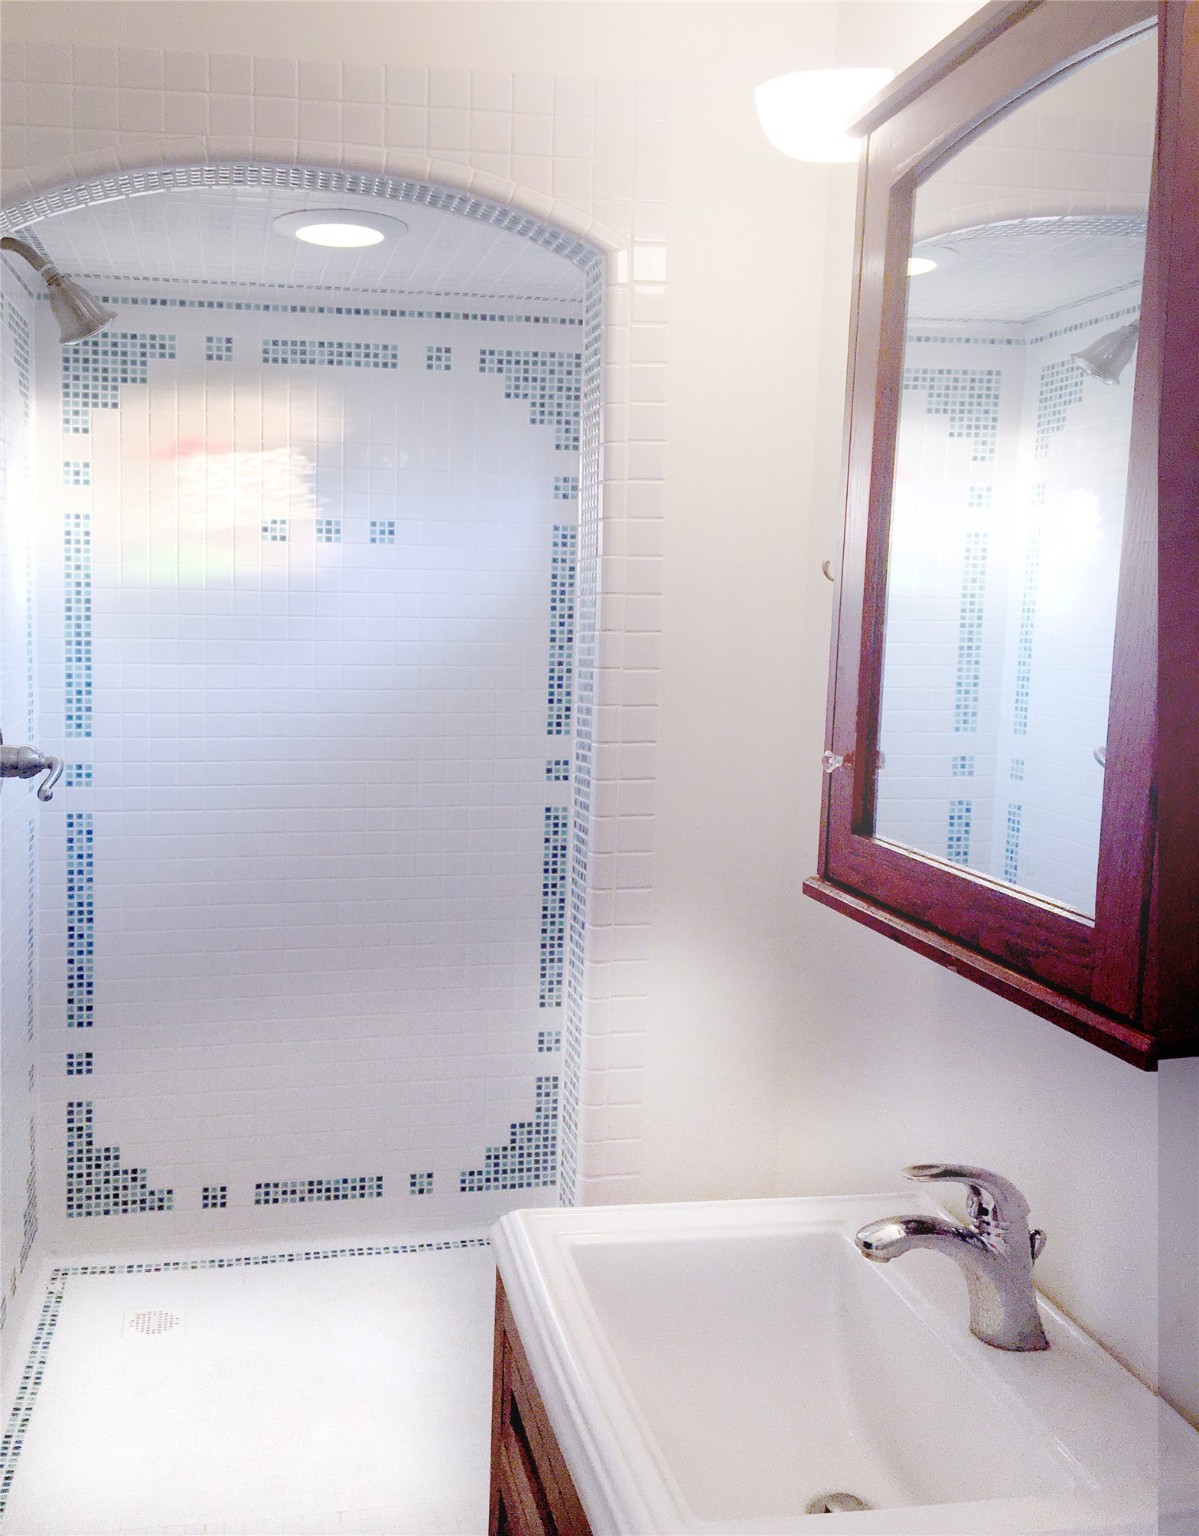 Shower with Craftsman inspired tile design.